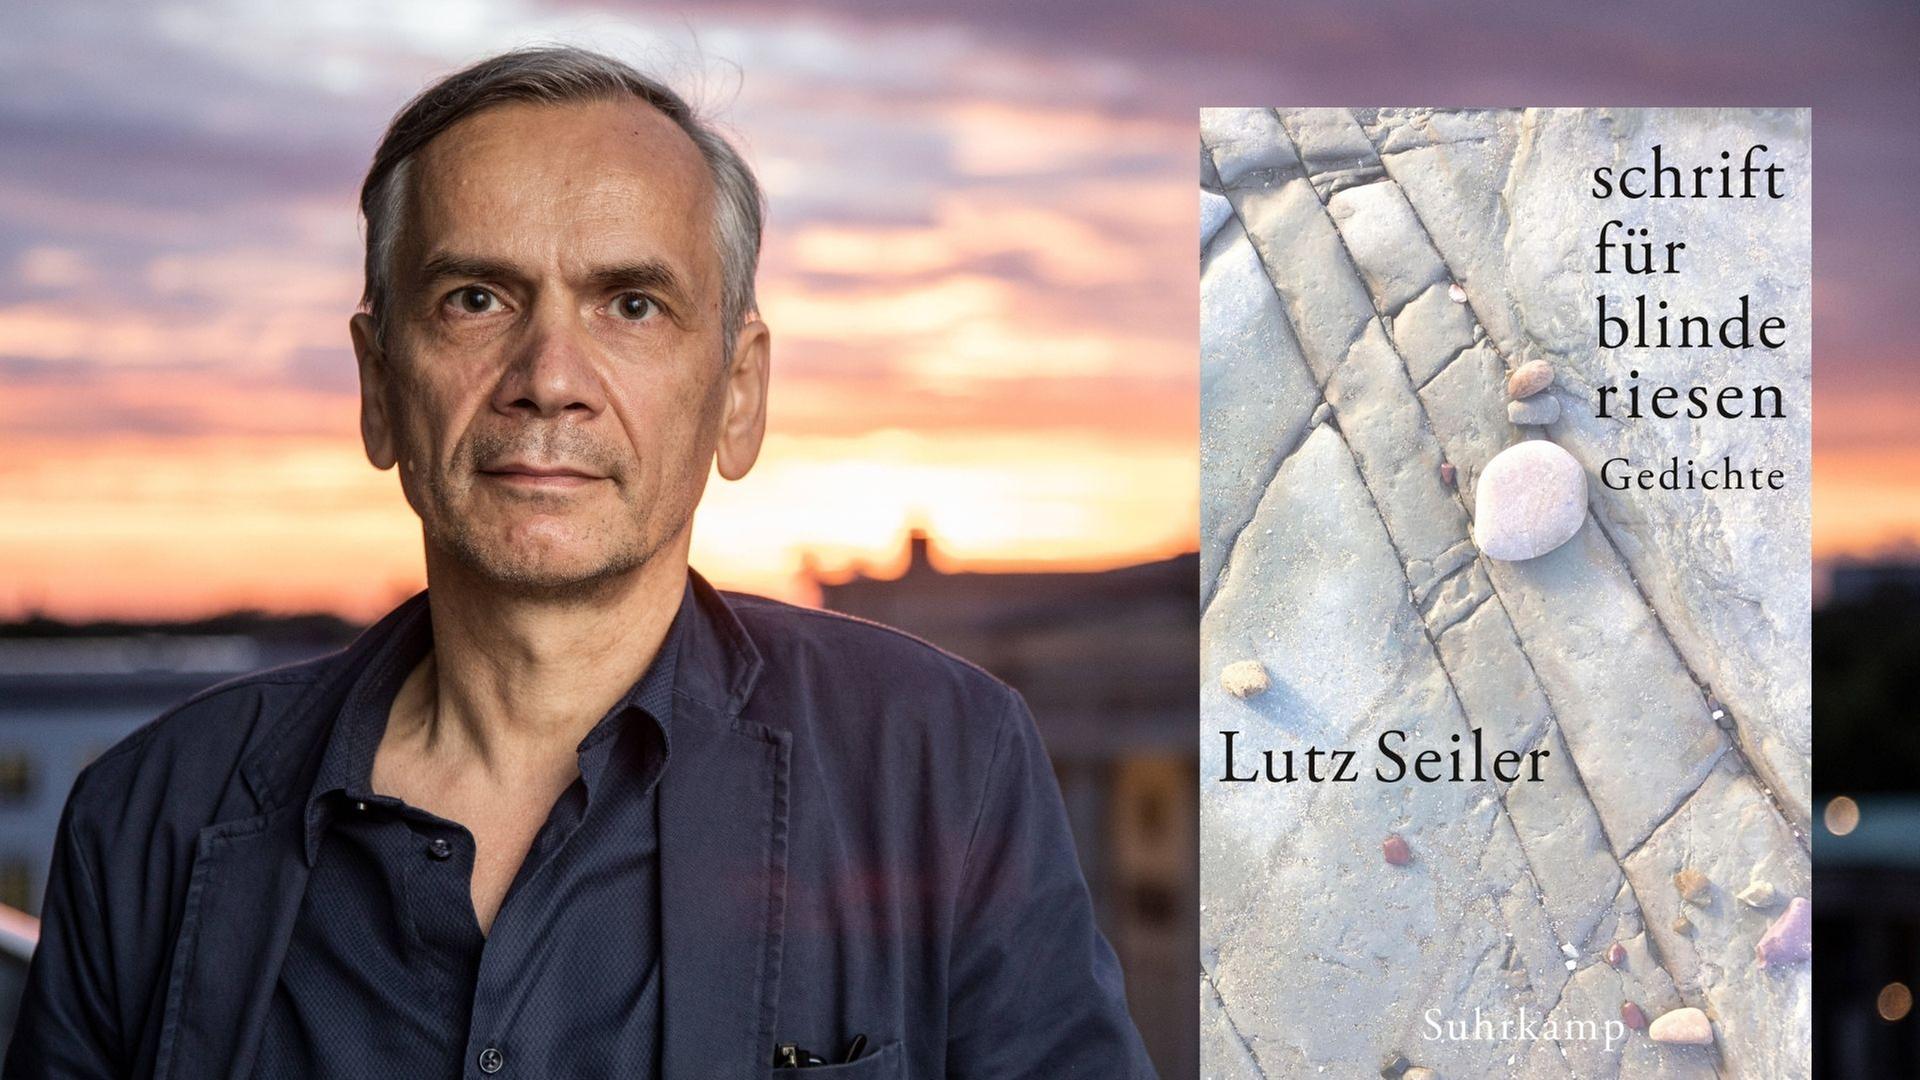 Der Schriftsteller Lutz Seiler und sein Gedichtband "schrift für blinde riesen"